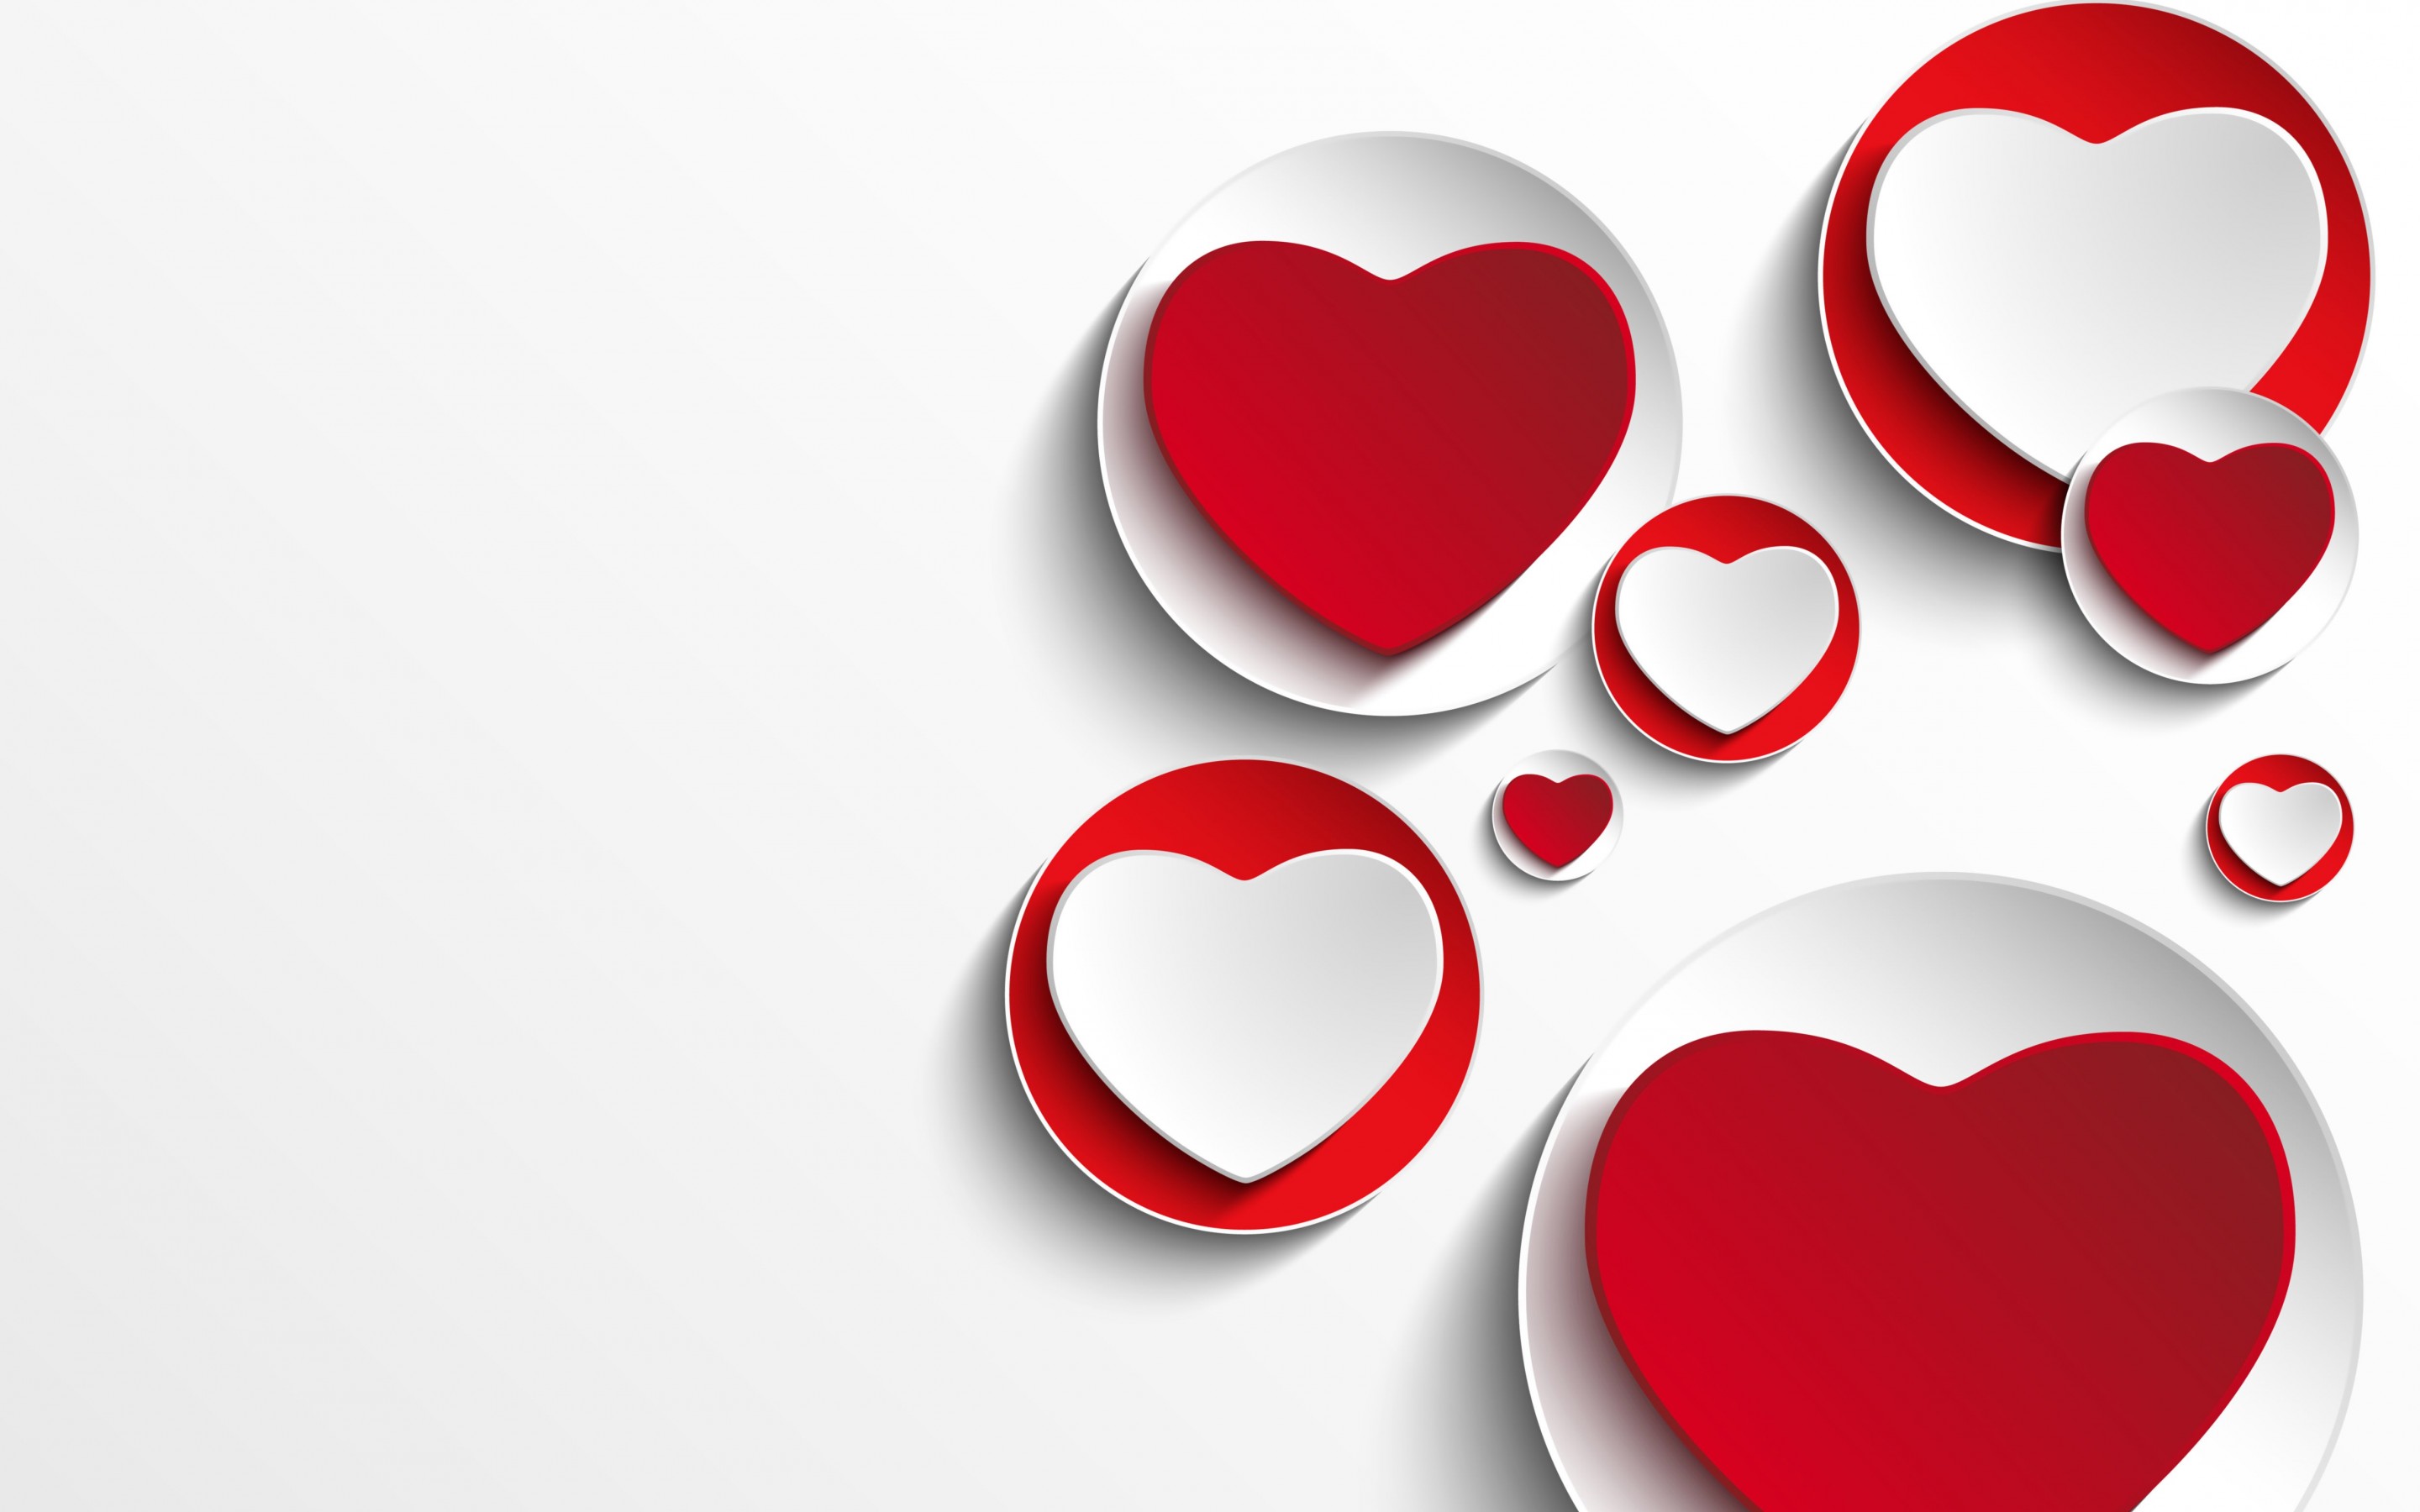 Minimalistic Hearts Shapes Wallpaper for Desktop 2880x1800